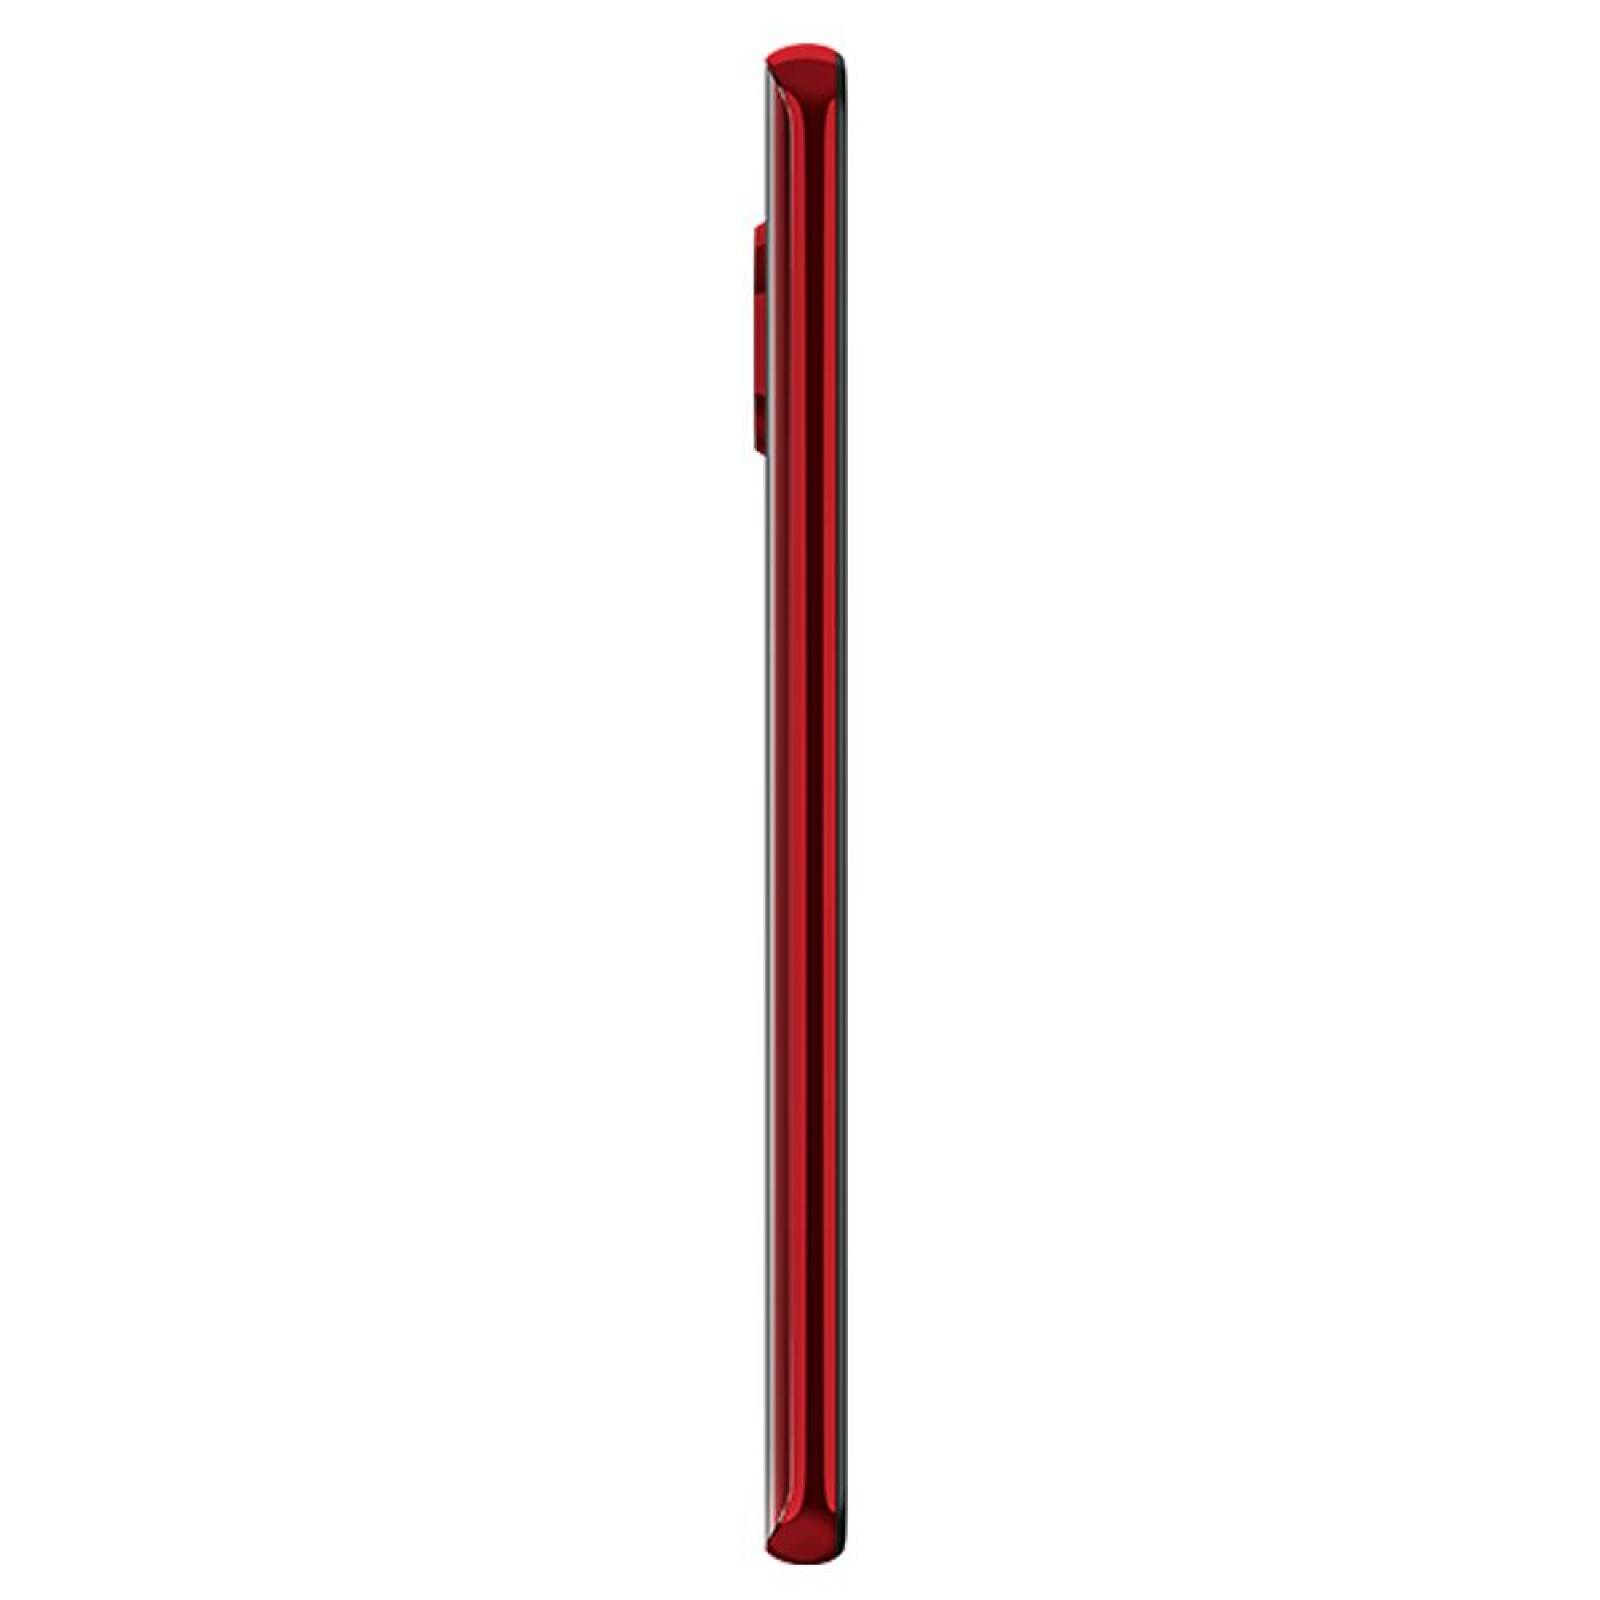 Smartphone Motorola Moto G8 Plus 64 Gb Rojo Desbloqueado 